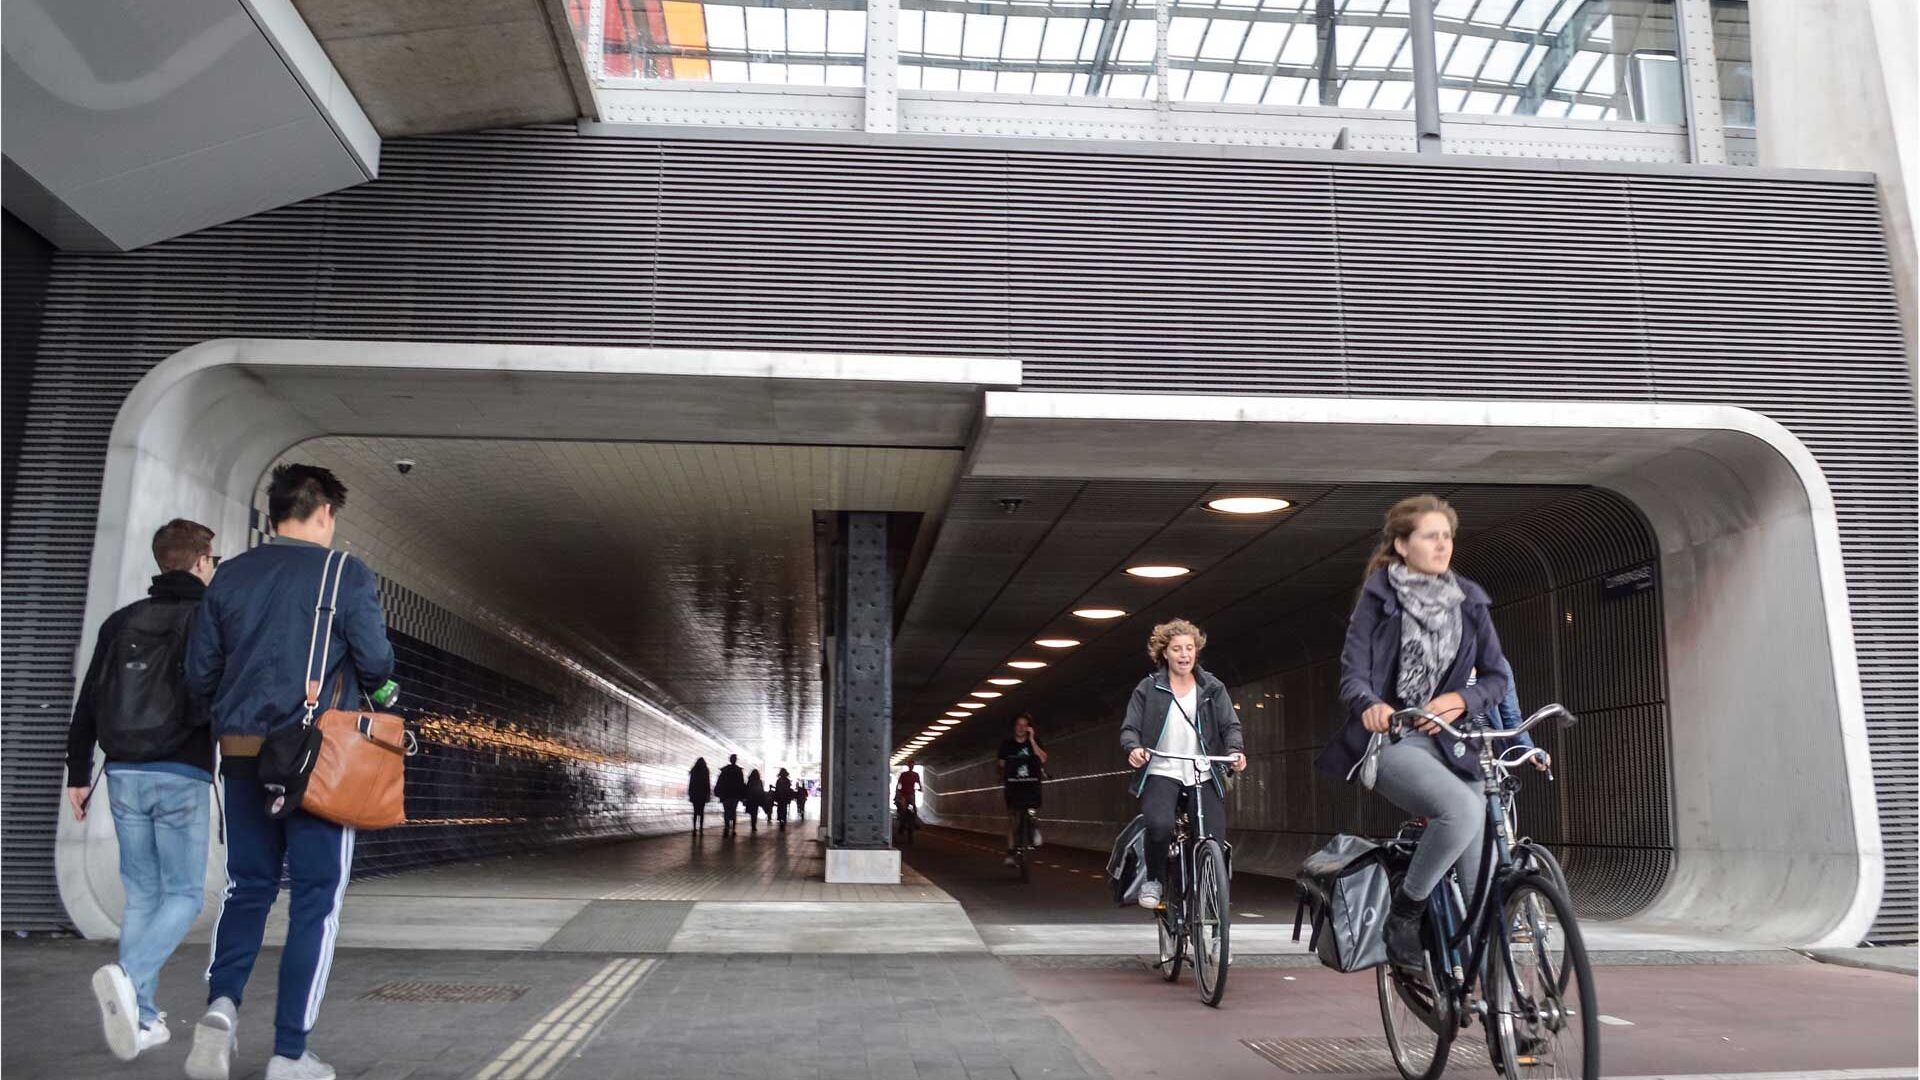 Il progetto “Fili” prevede una ciclostrada da Milano a Malpensa